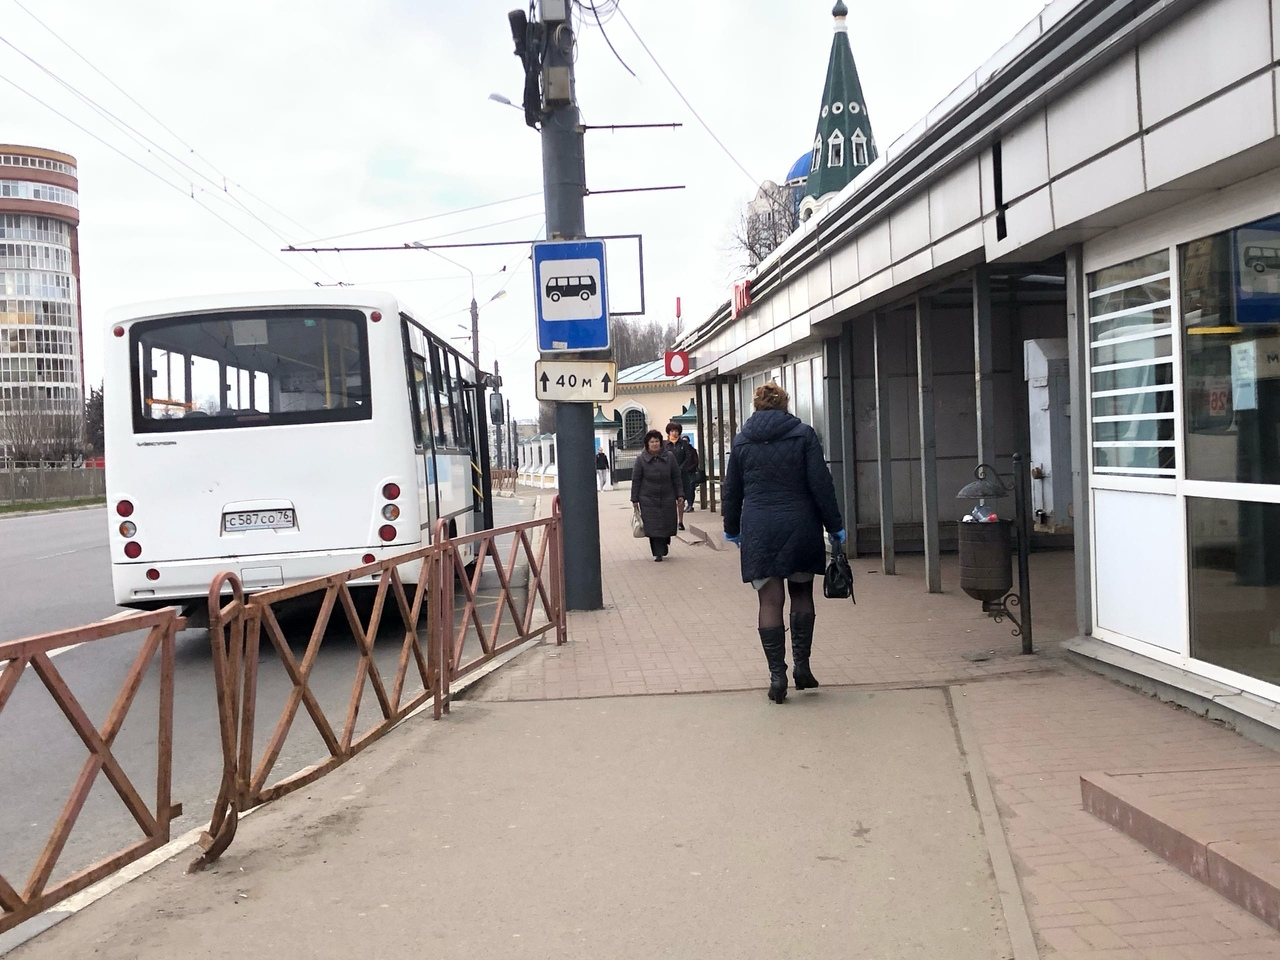 Переломы таза получила пассажирка в маршрутке Ярославля: подробности ЧП